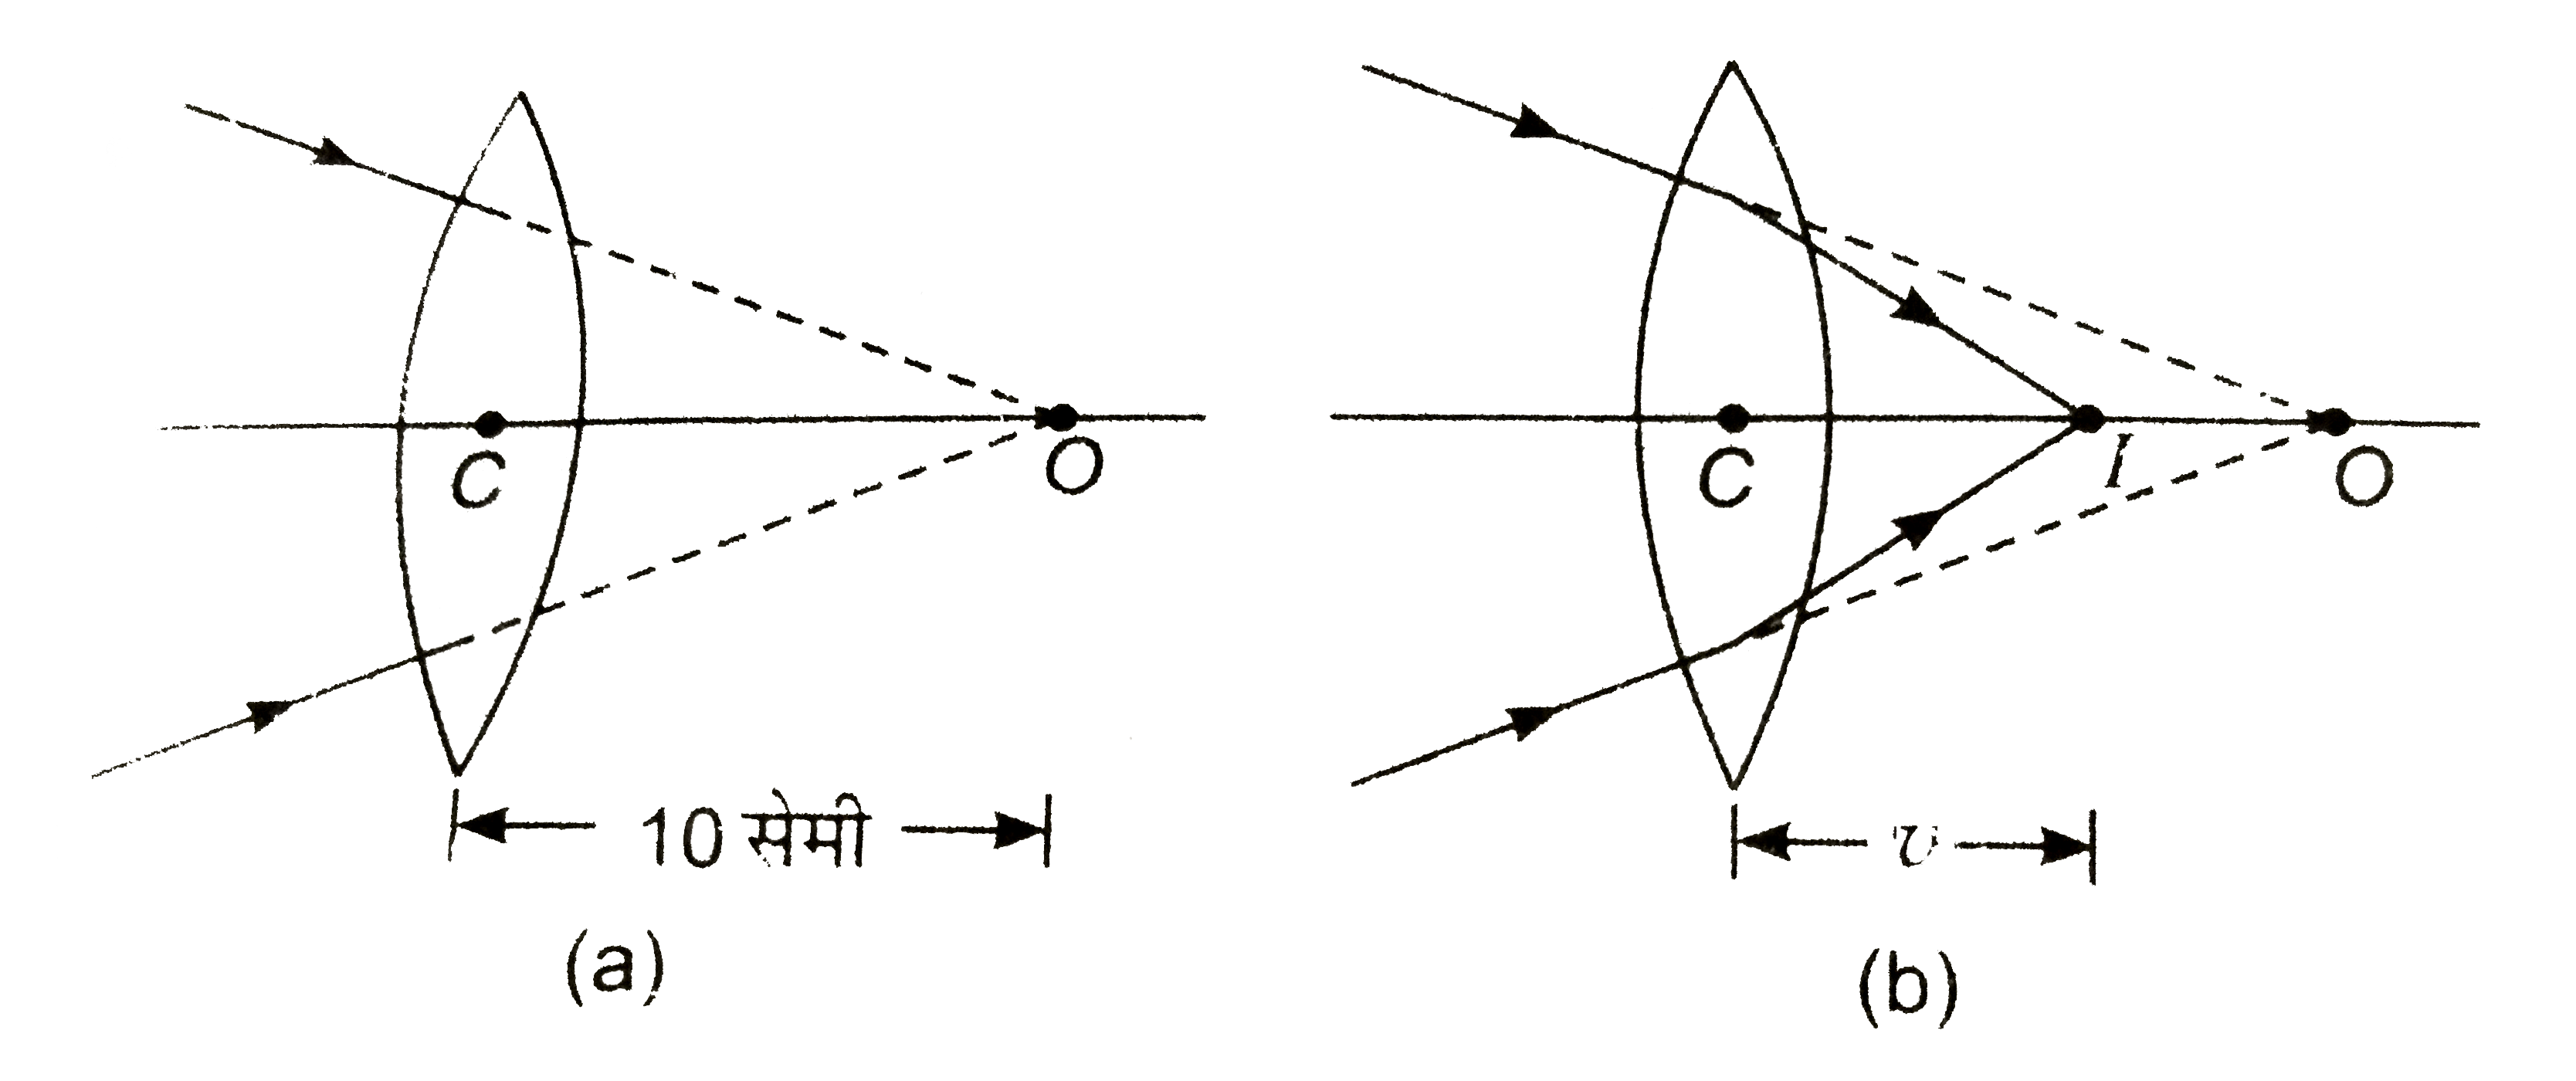 प्रकाश की किरणें उत्तल लेन्स पर दर्शाए गए चित्र (a) के अनुसार पद रही हैं। यदि लेन्स की फ़ोकस दूरी 20 सेमी हो तो प्रतिबिम्ब की स्थिति ज्ञात कीजिए।